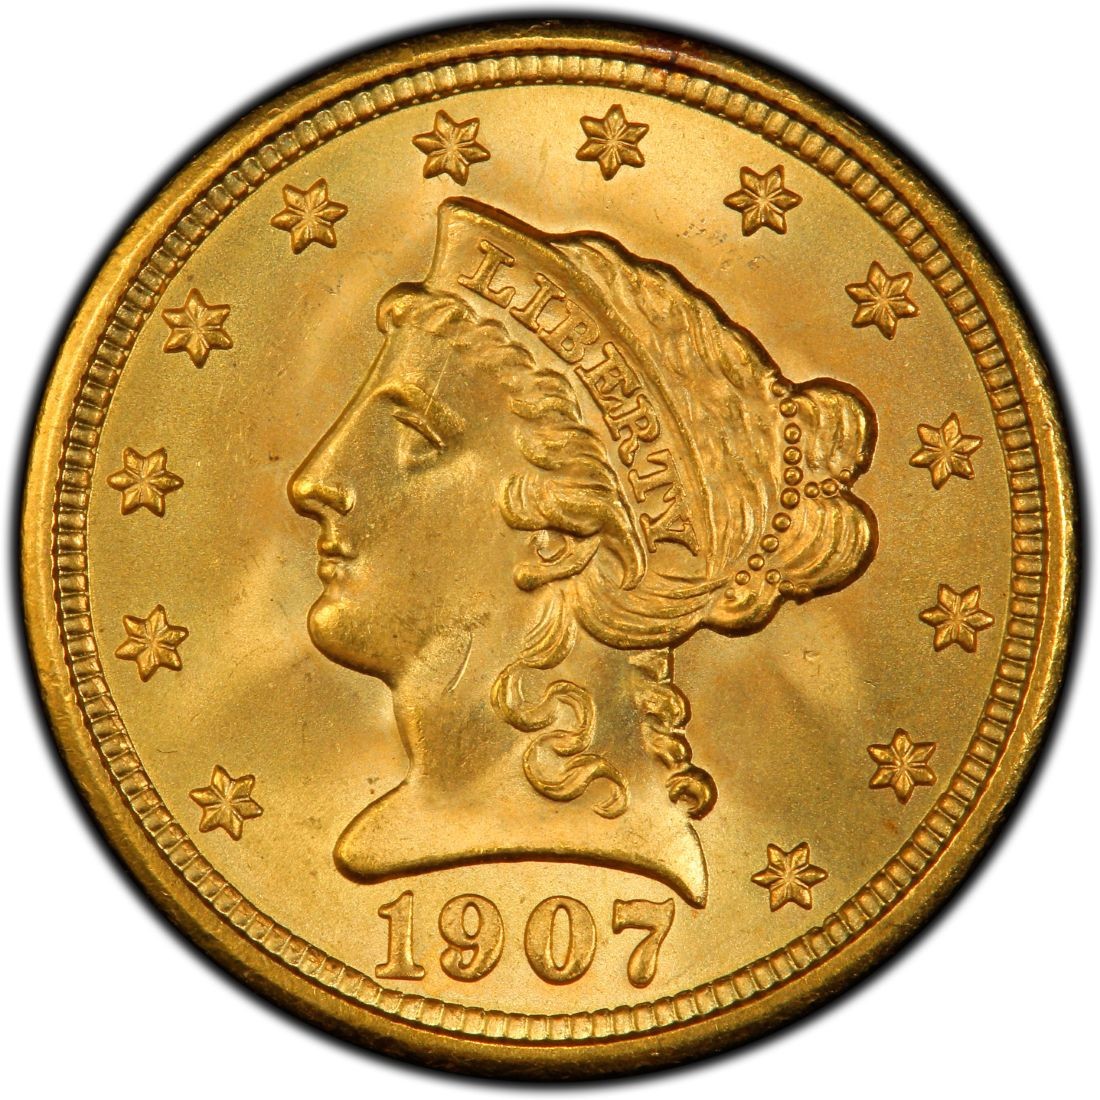 1907 gold 5 dollar coin